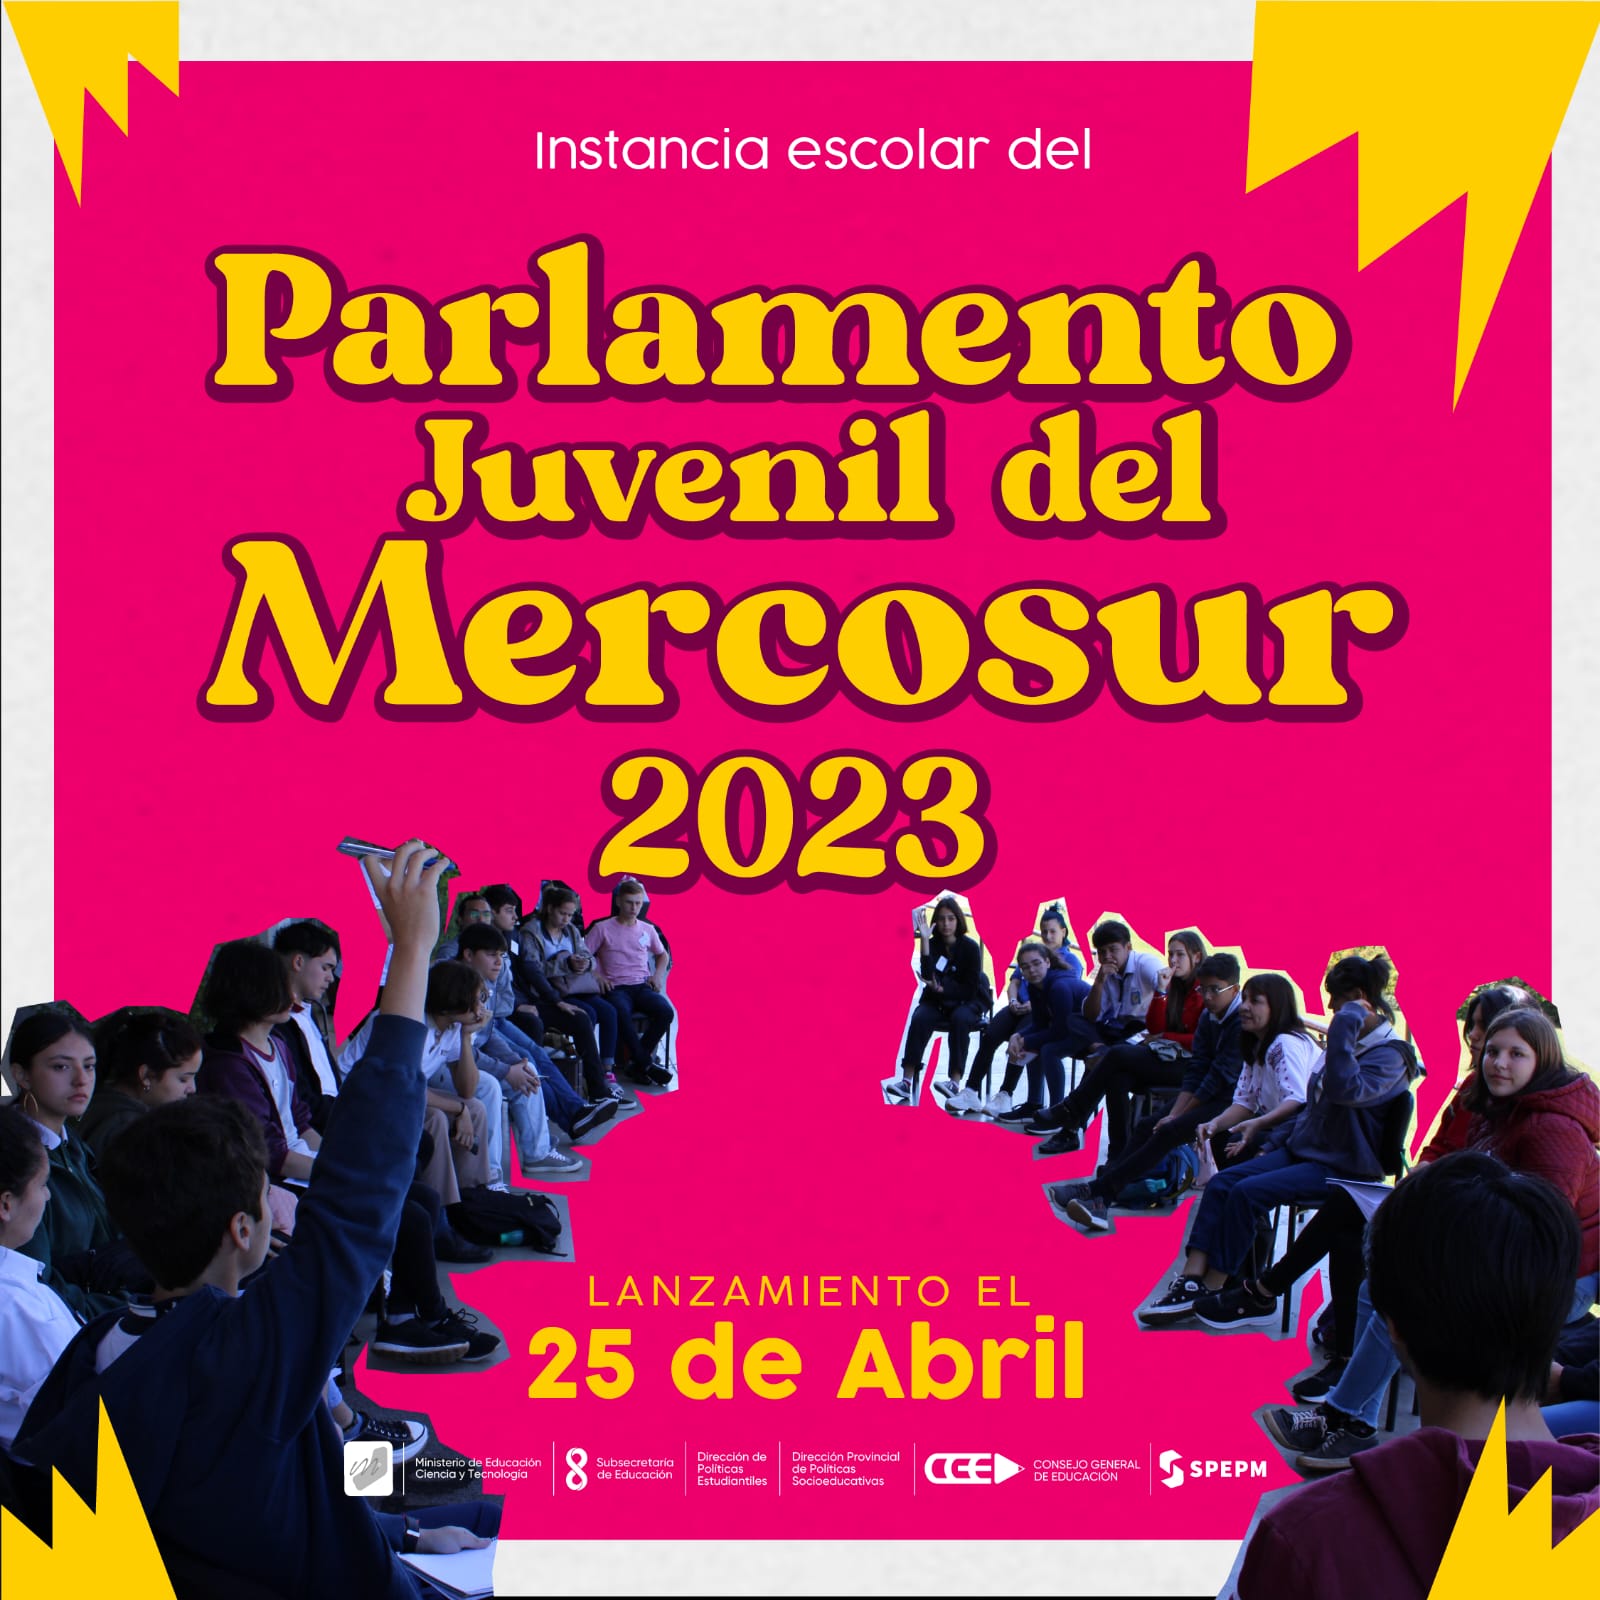 Este martes lanzarán la instancia escolar del Parlamento Juvenil del Mercosur 2023 imagen-1